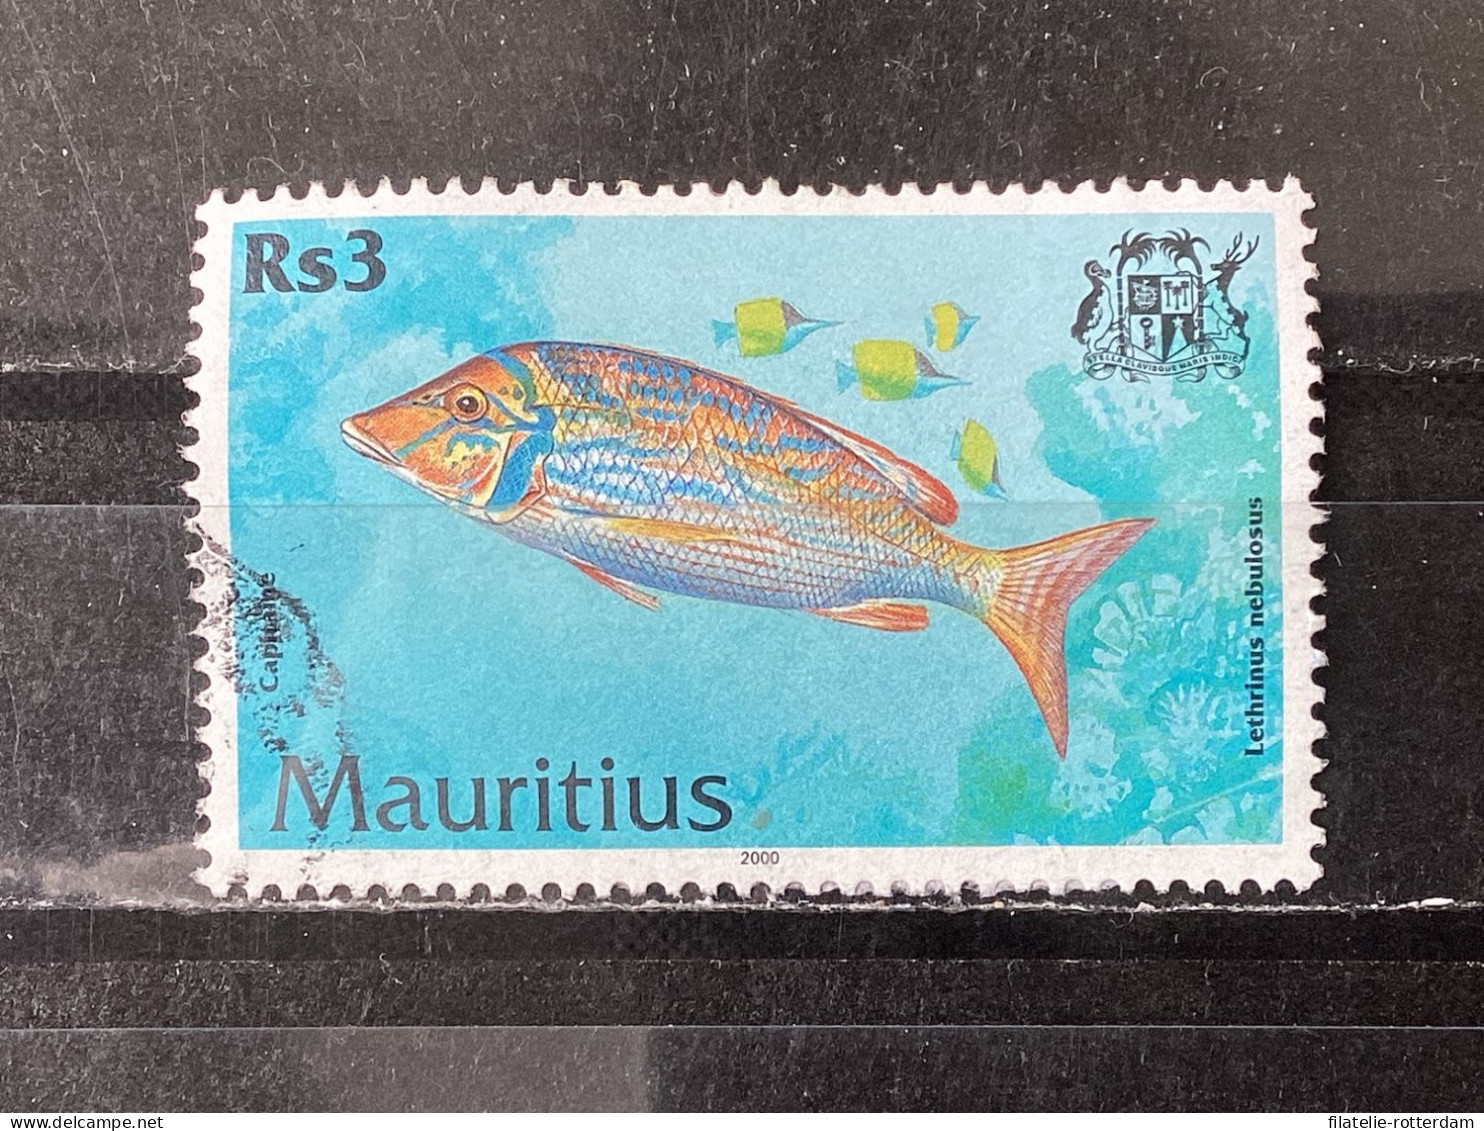 Mauritius - Fish (3) 2000 - Maurice (1968-...)